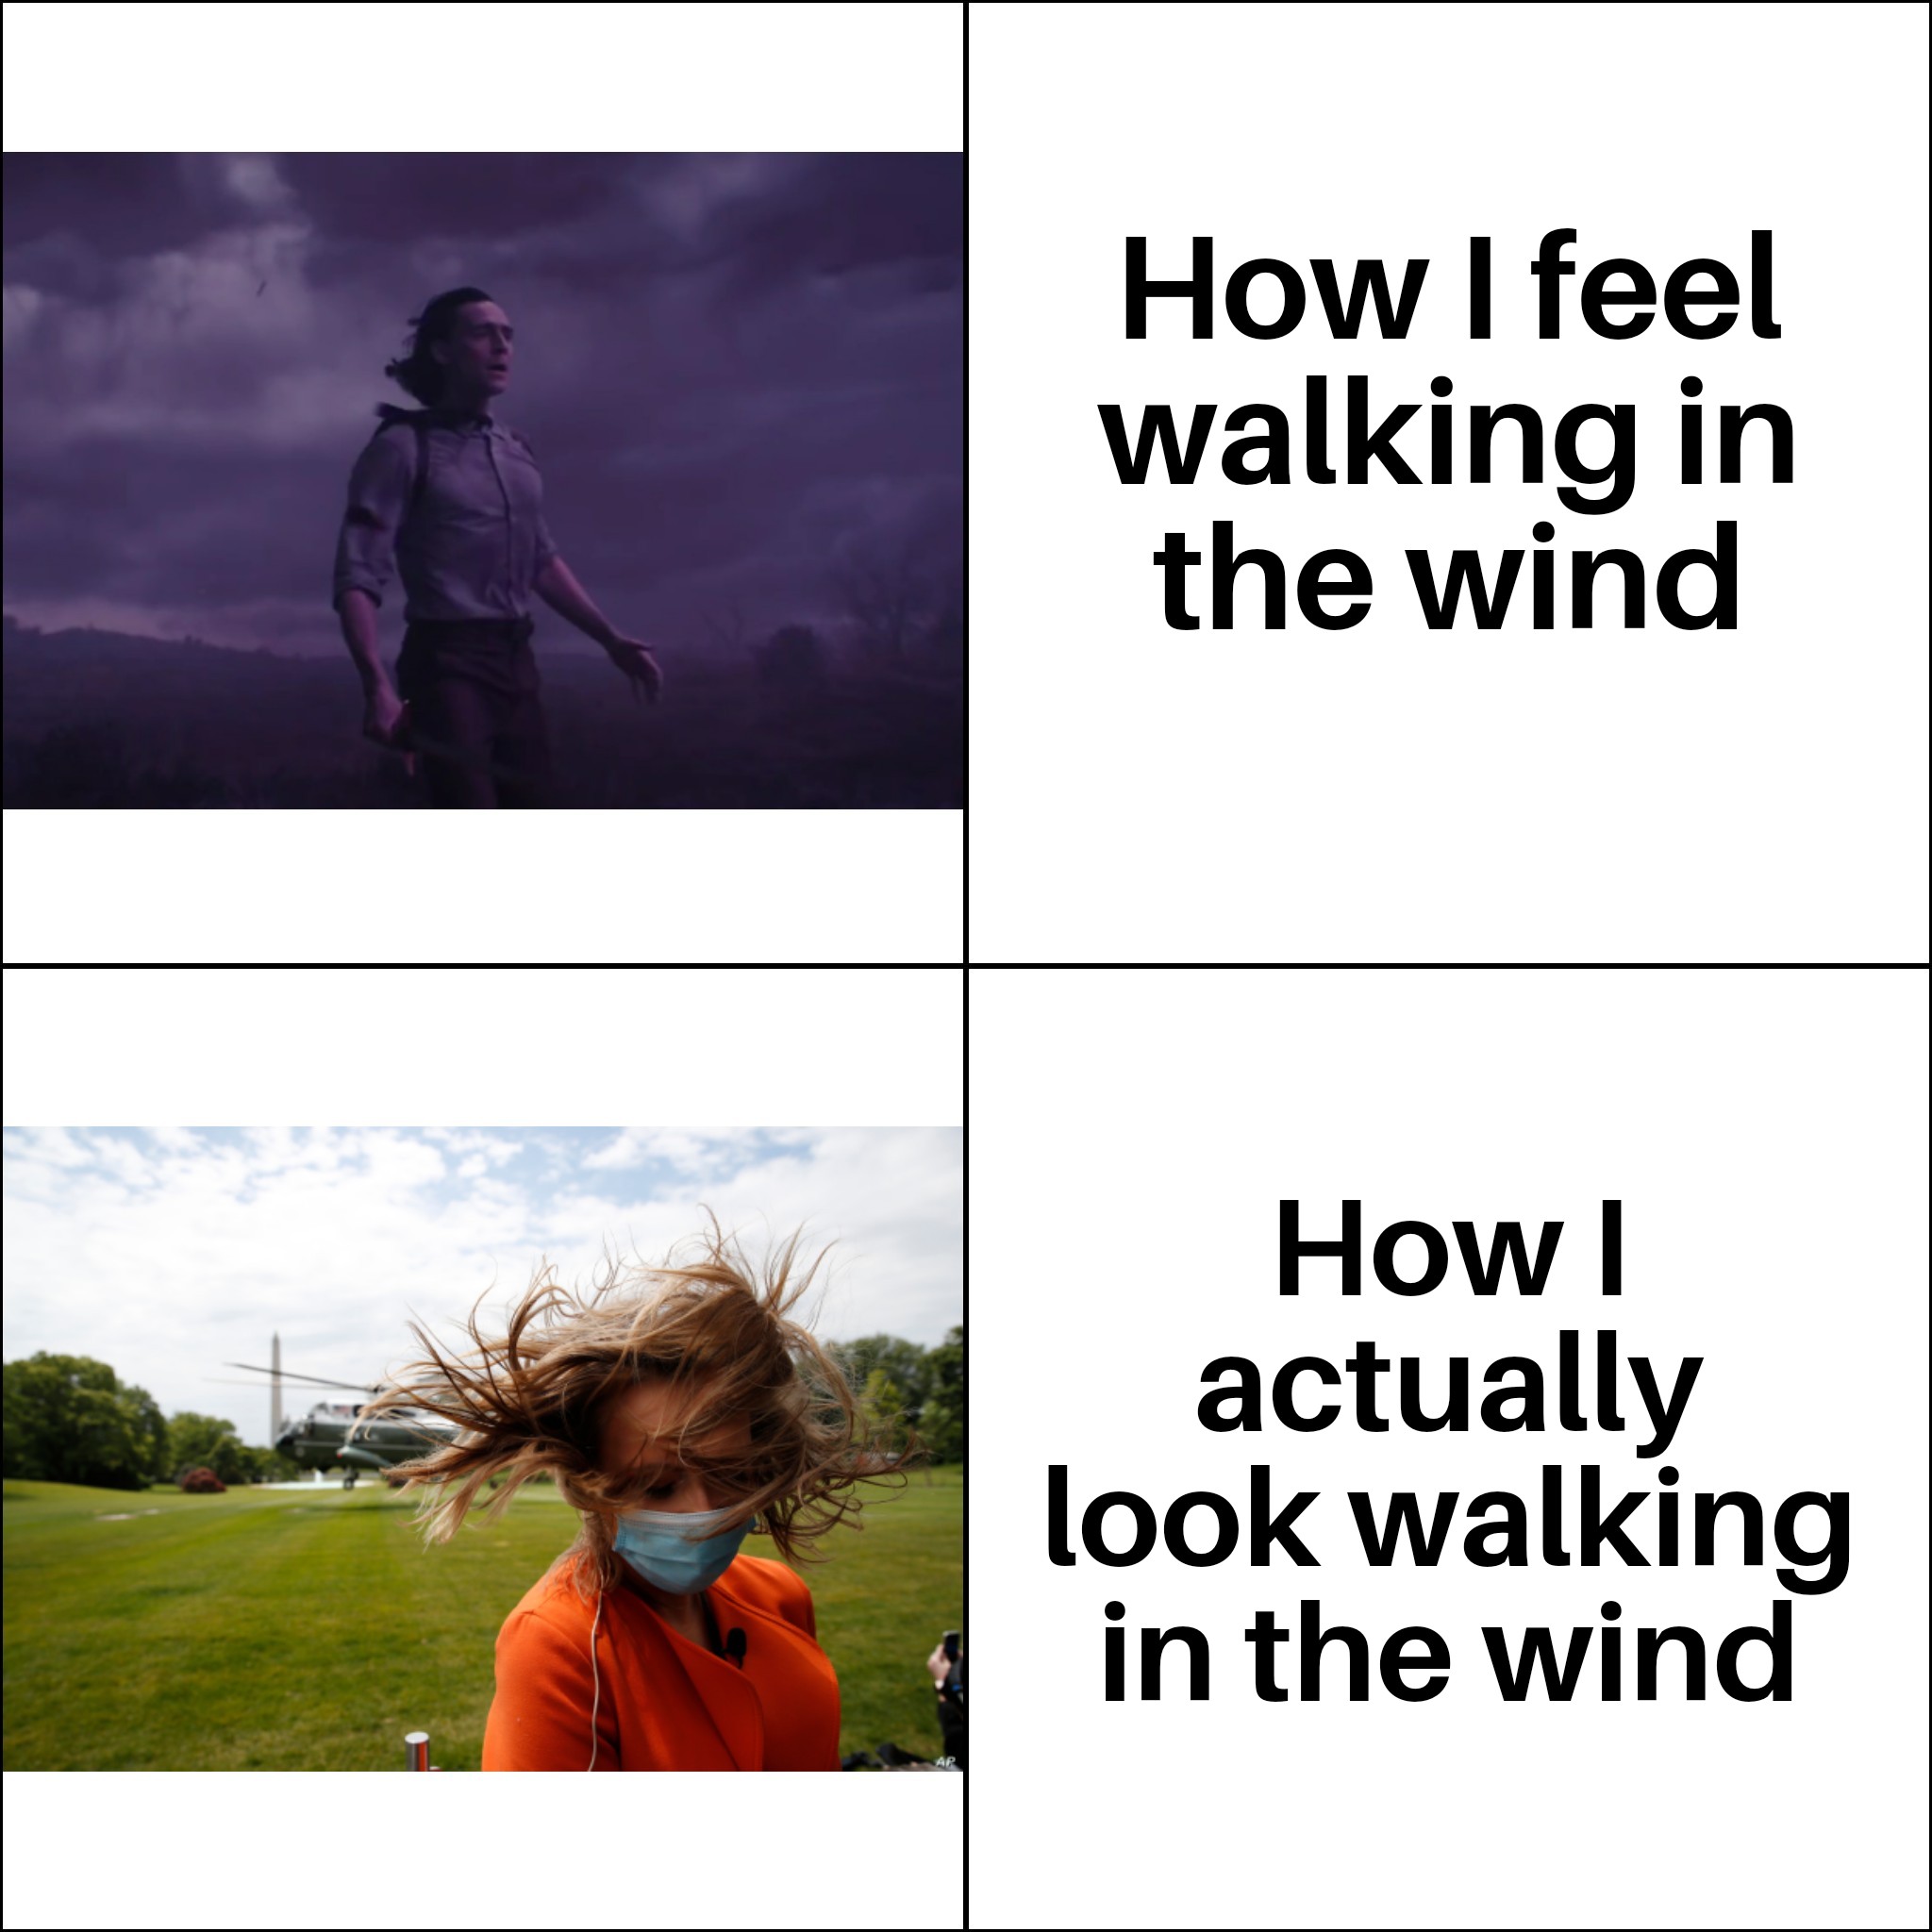 human behavior - How I feel walking in the wind How actually look walking in the wind